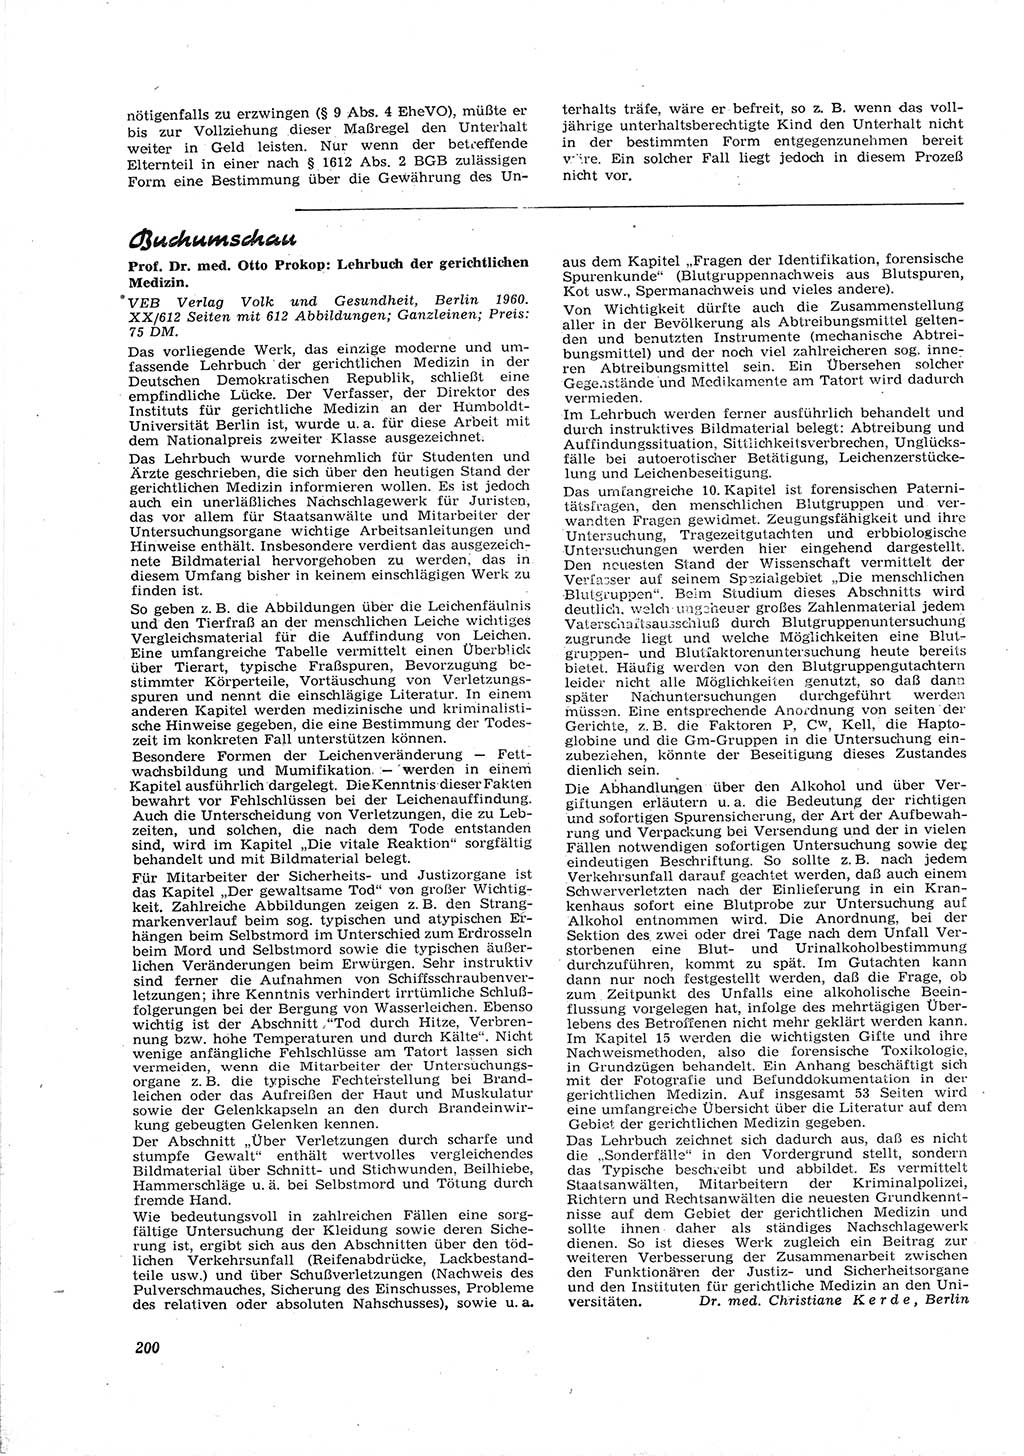 Neue Justiz (NJ), Zeitschrift für Recht und Rechtswissenschaft [Deutsche Demokratische Republik (DDR)], 16. Jahrgang 1962, Seite 200 (NJ DDR 1962, S. 200)